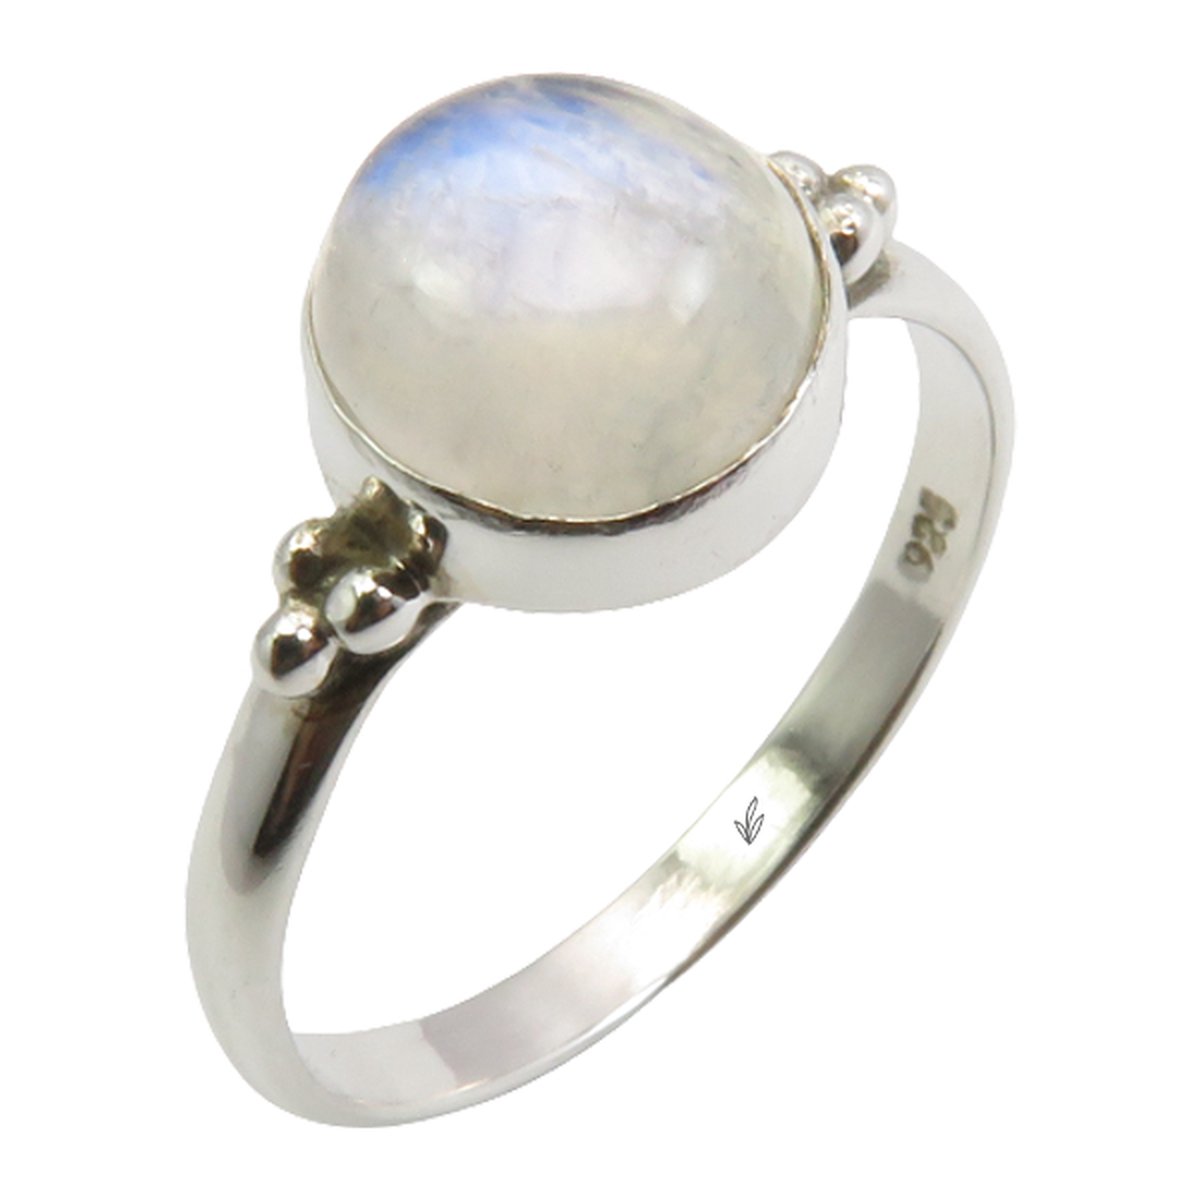 Natuursieraad - 925 sterling zilver maansteen ring maat 17.25 mm - luxe edelsteen sieraad - handgemaakt